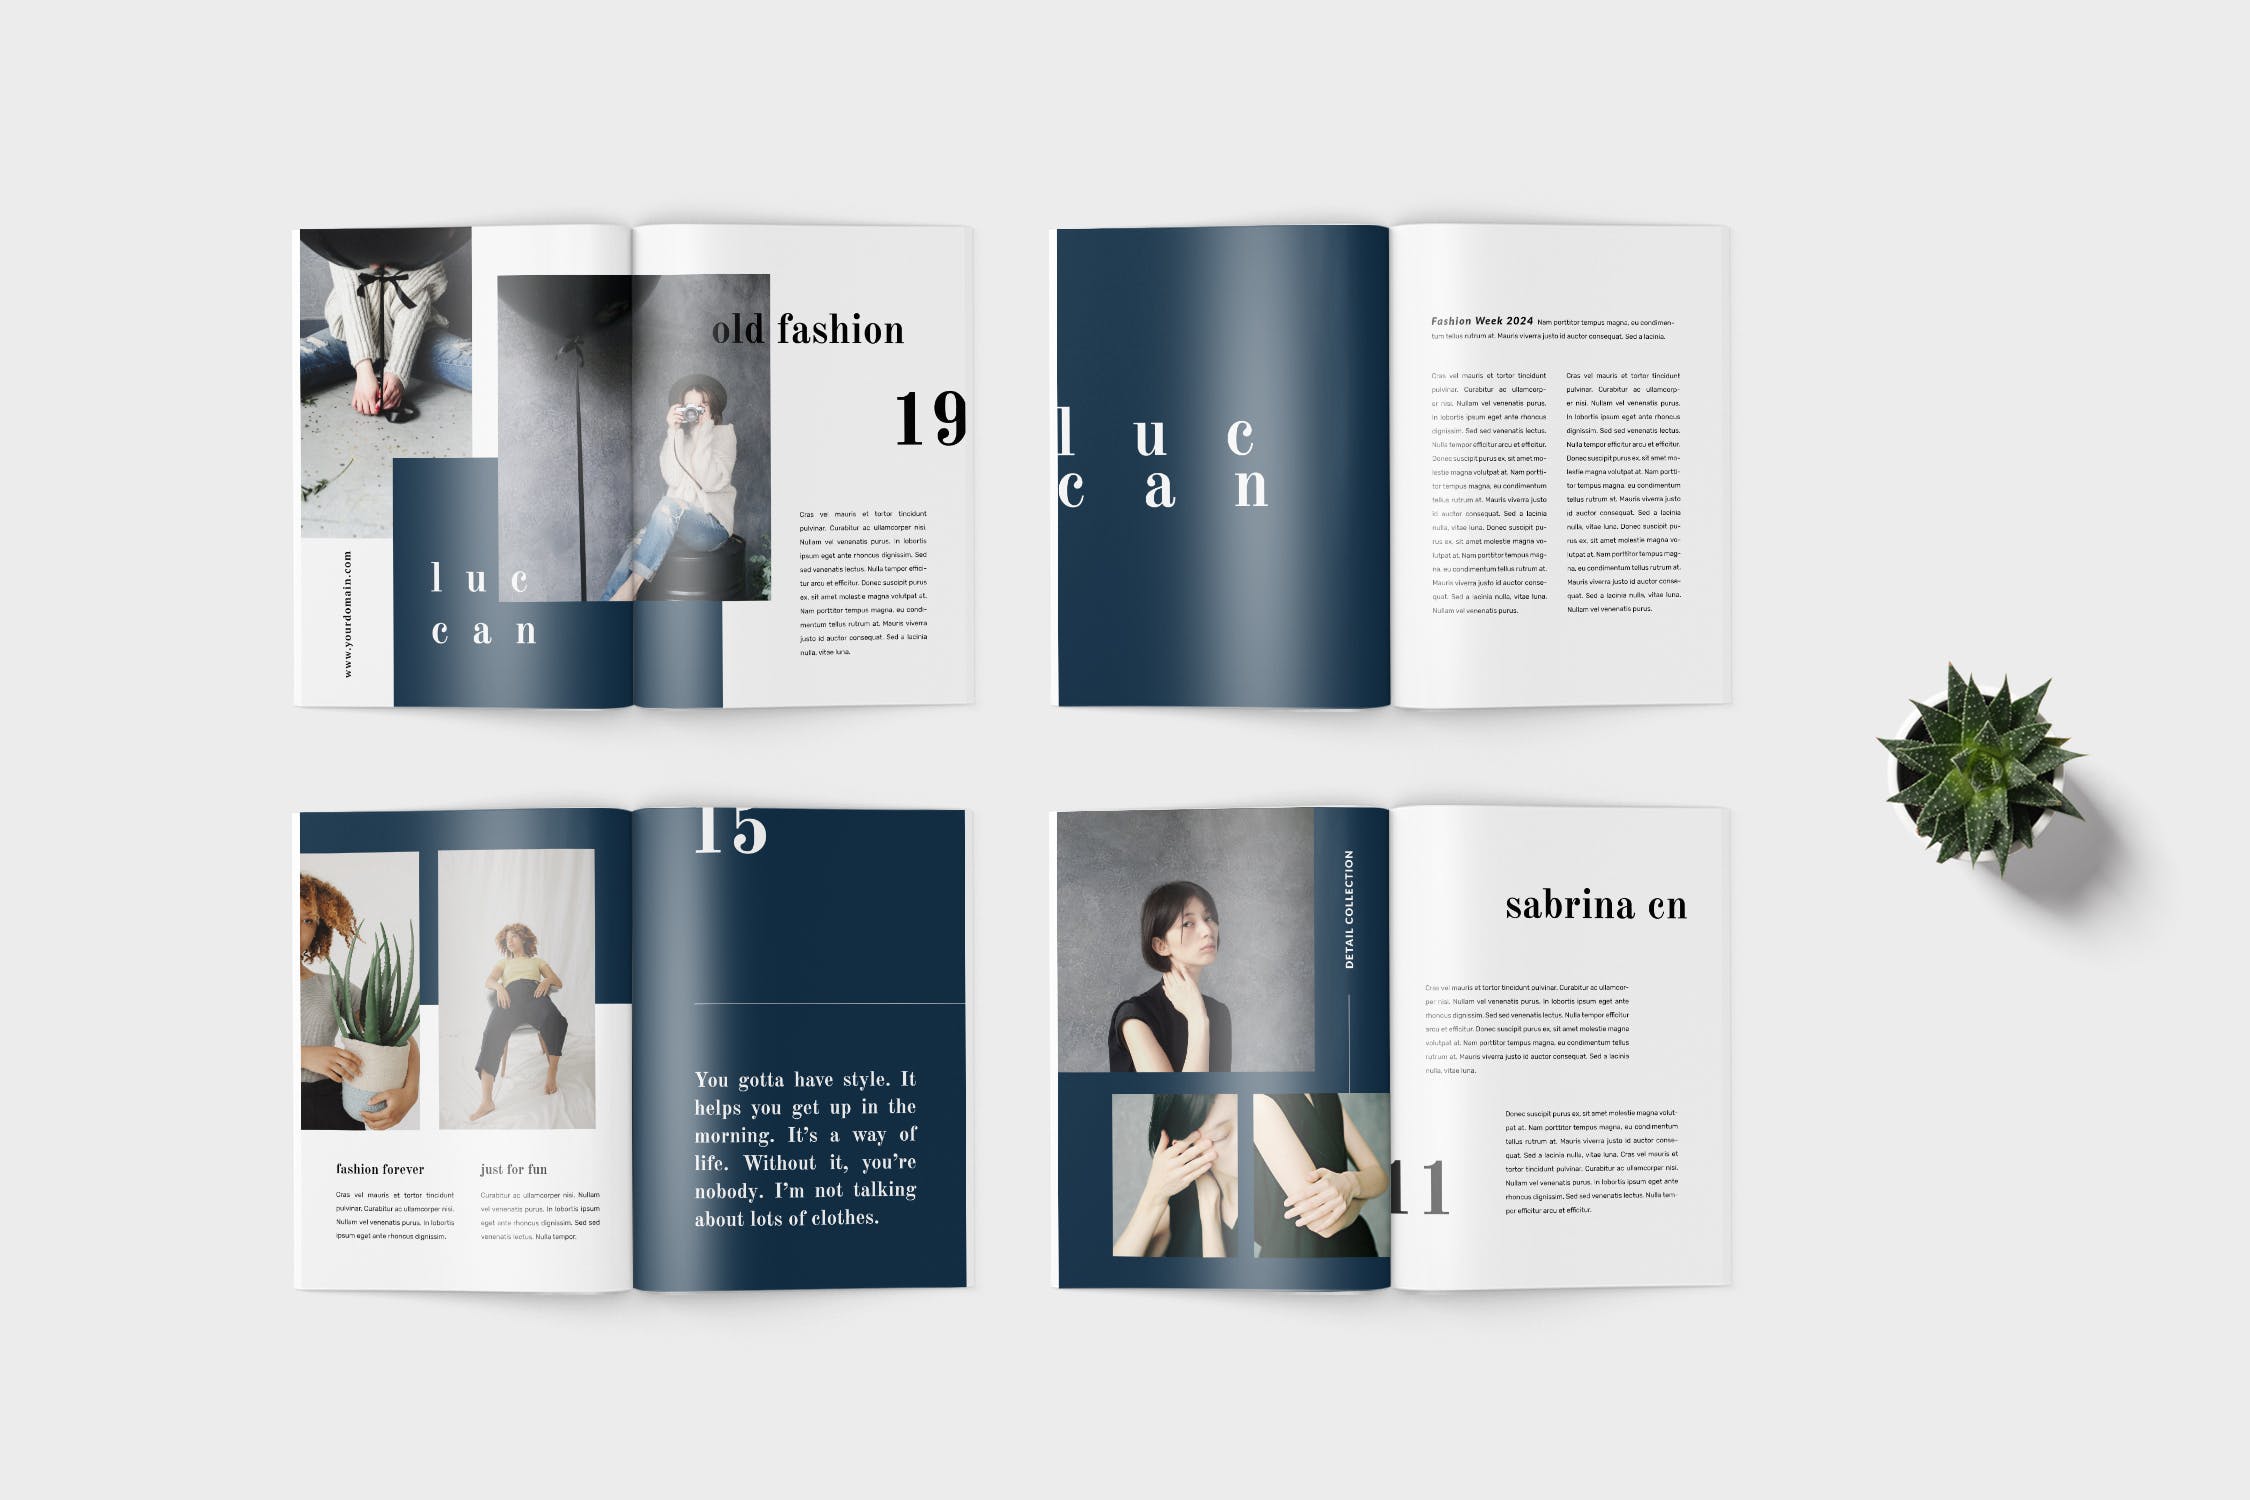 高端女性服装品牌产品素材库精选目录设计模板 Luccan Fashion Lookbook Catalogue插图(3)